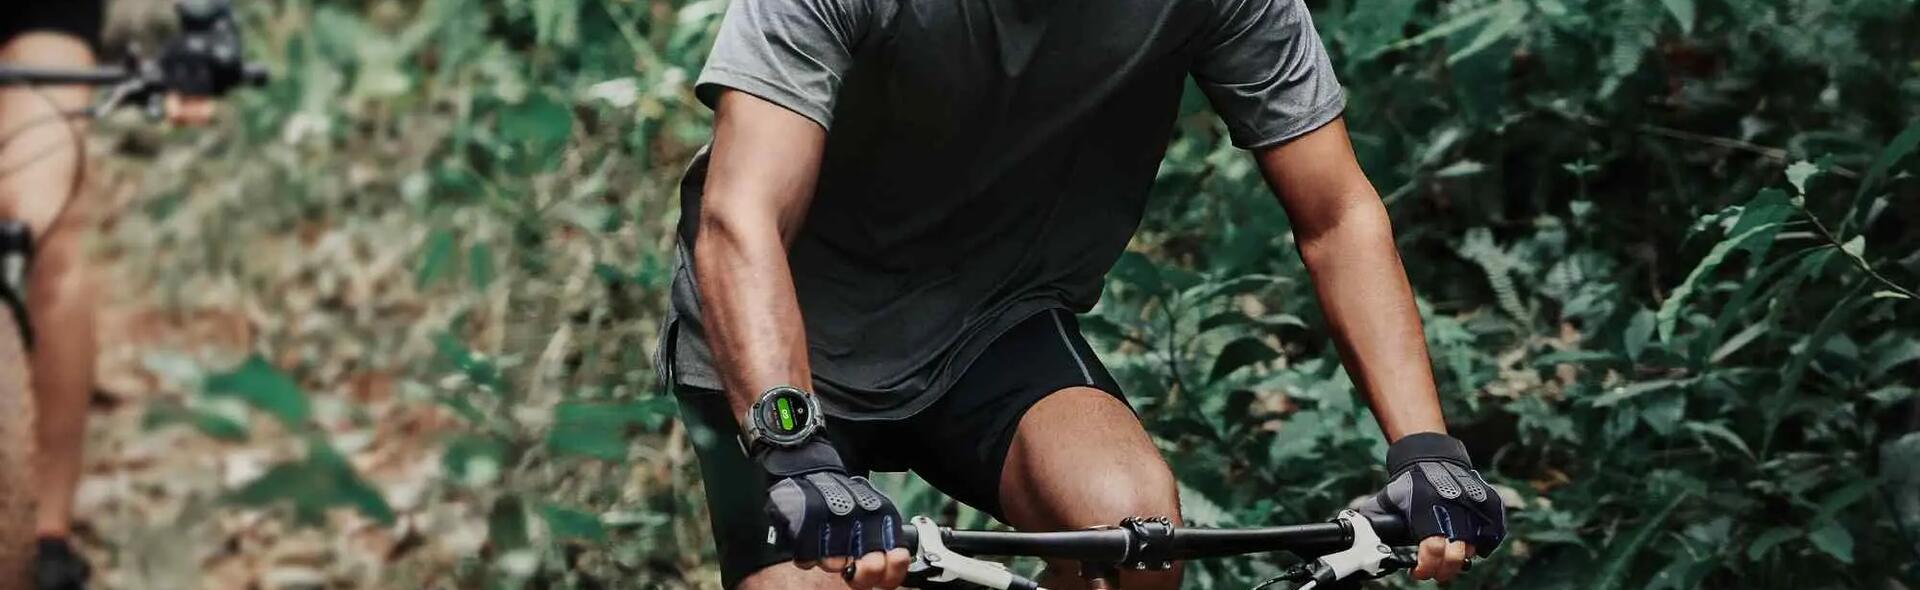 mężczyzna jadący na rowerze z zegarkiem sportowym na ręce